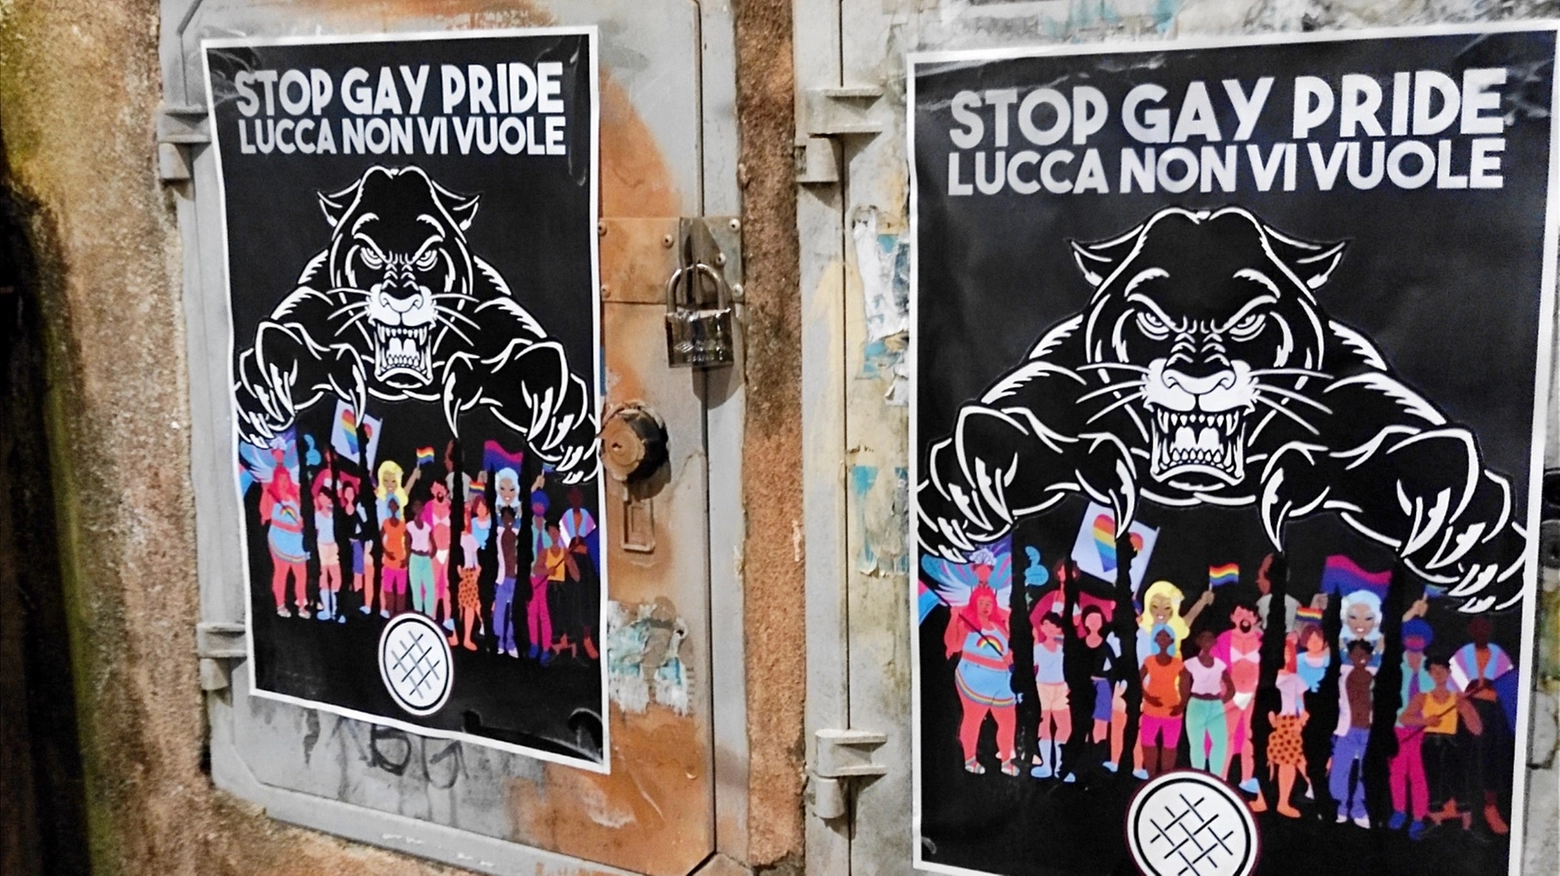 “Stop gay pride, Lucca non vi vuole" si legge nei volantini dove una pantera rabbiosa allunga le zampe su un gruppo di persone. Nell’email di rivendicazione ‘La rete dei patrioti’ scrive: “La città è saldamente legata alle proprie radici cattoliche e ai valori della famiglia”